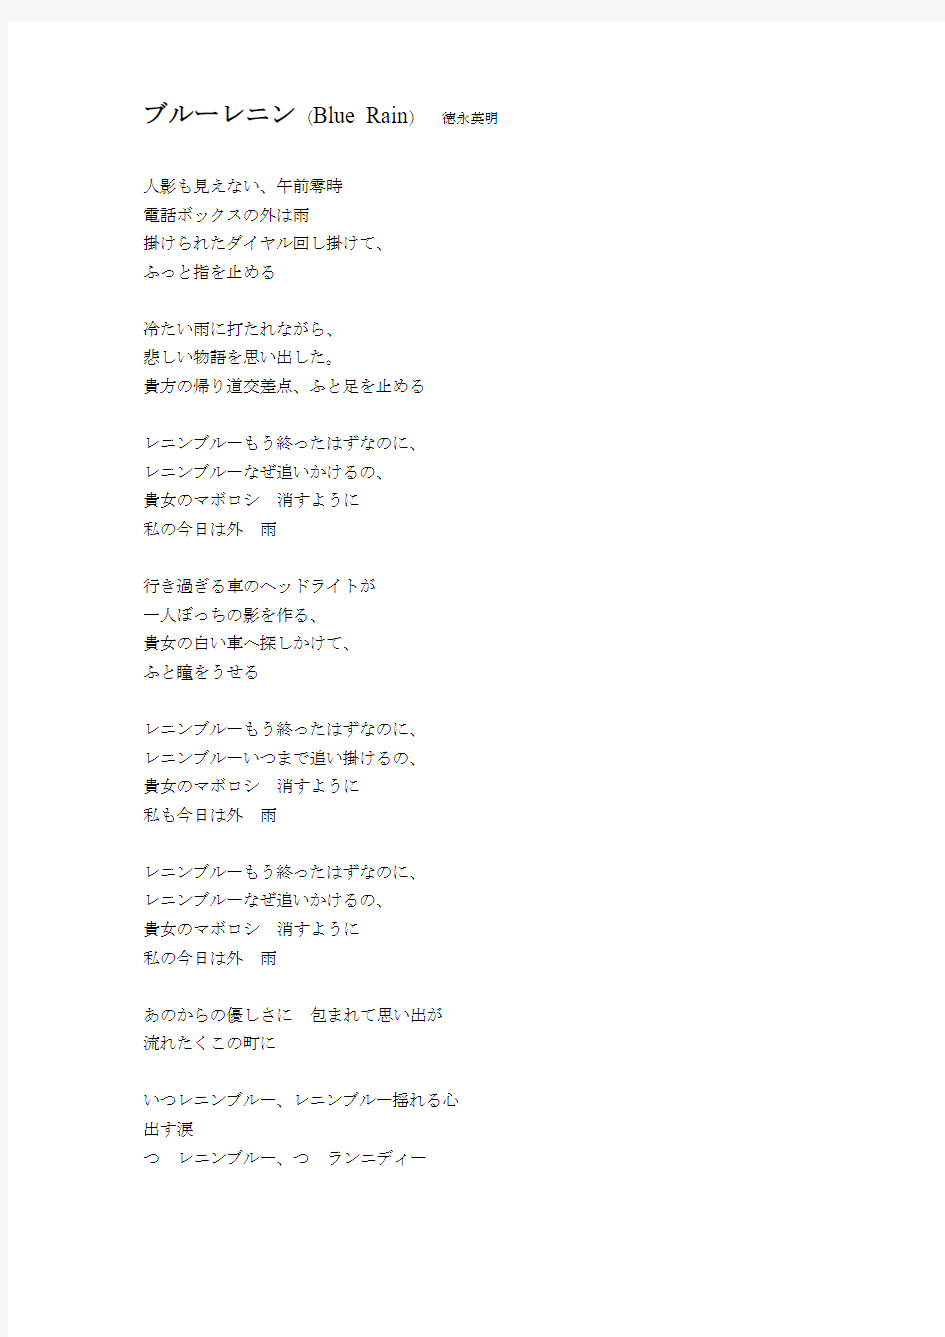 经典日语歌曲歌词-ブルーレニン(Blue Rain) 徳永英明